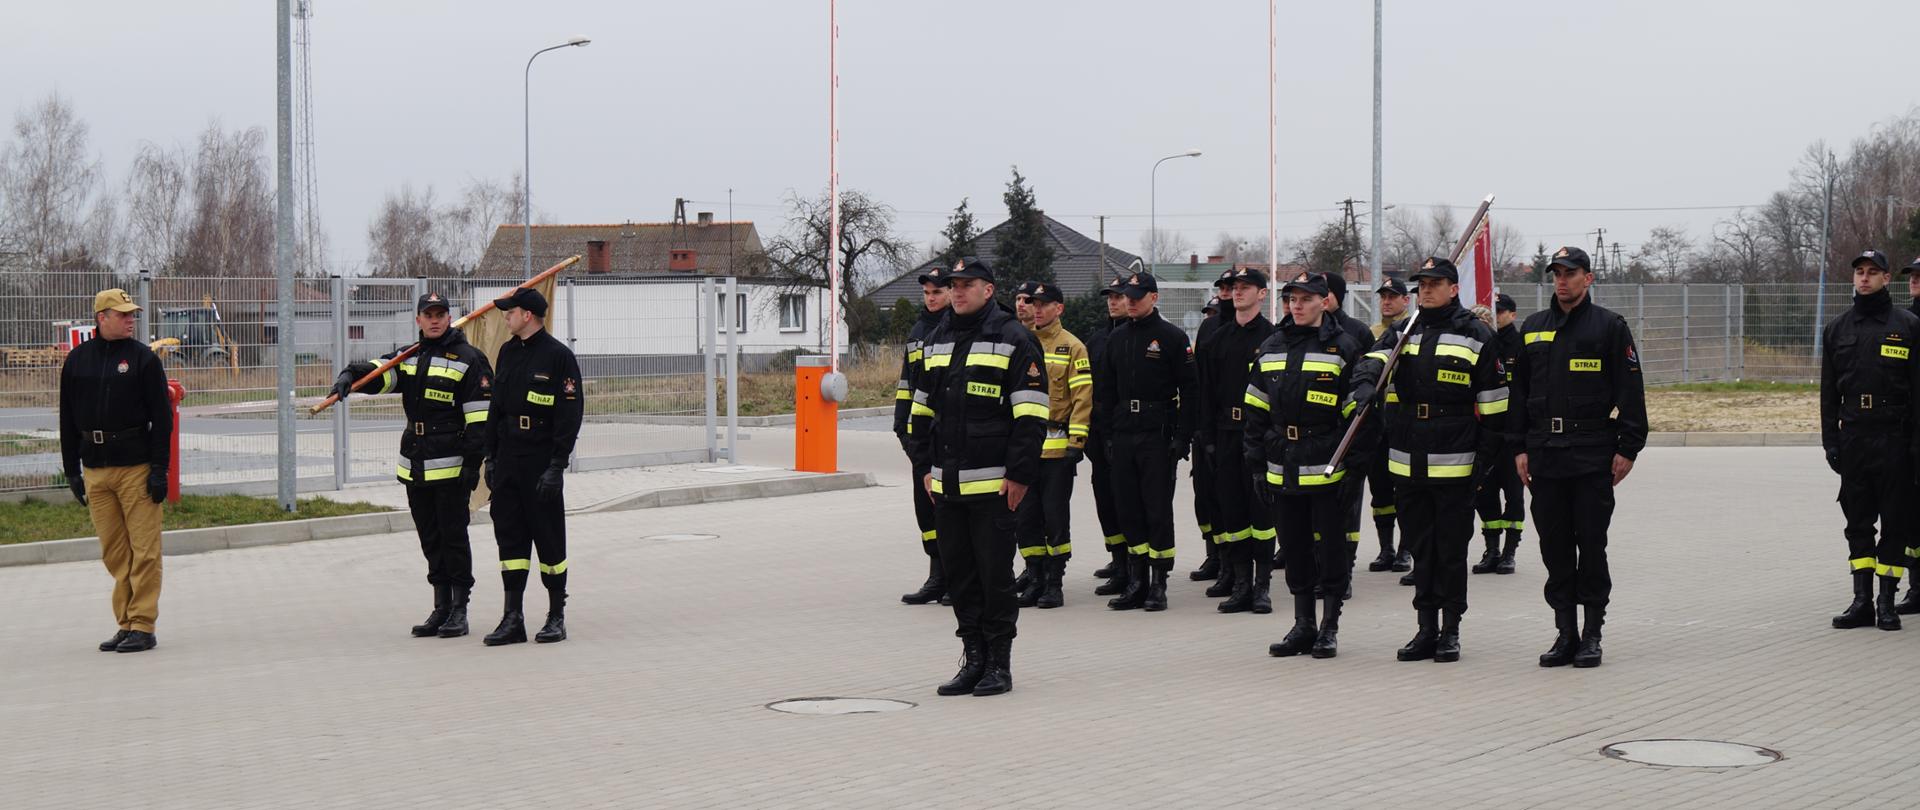 Zdjęcie przedstawia strażaków ze sztandarem ćwiczących musztrę